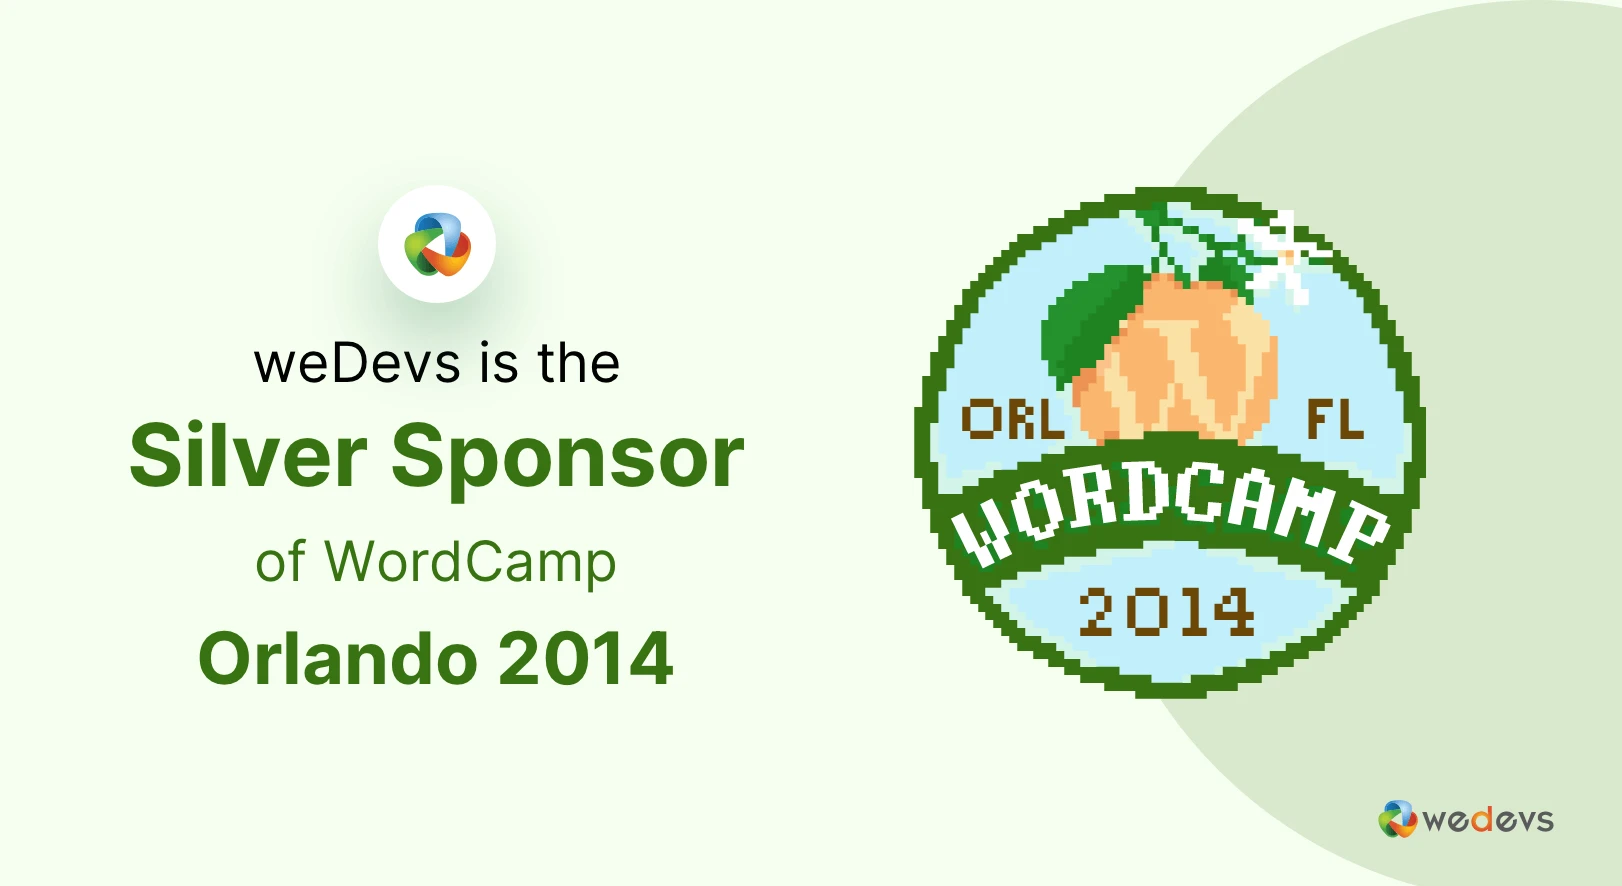 weDevs is the Silver Sponsor of WordCamp Orlando 2014